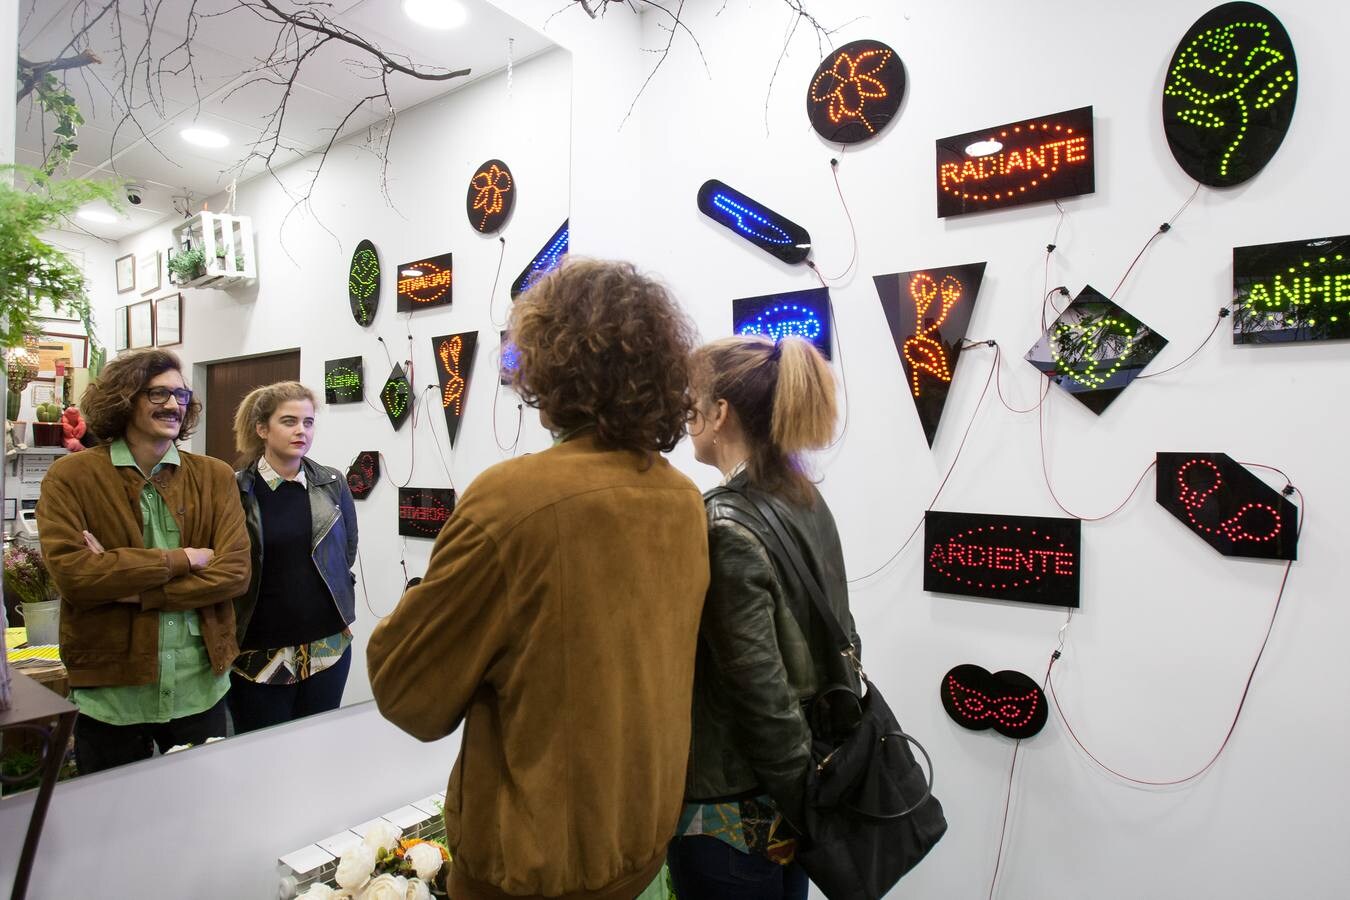 23 comercios de Logroño se convierten en instalaciones de arte.